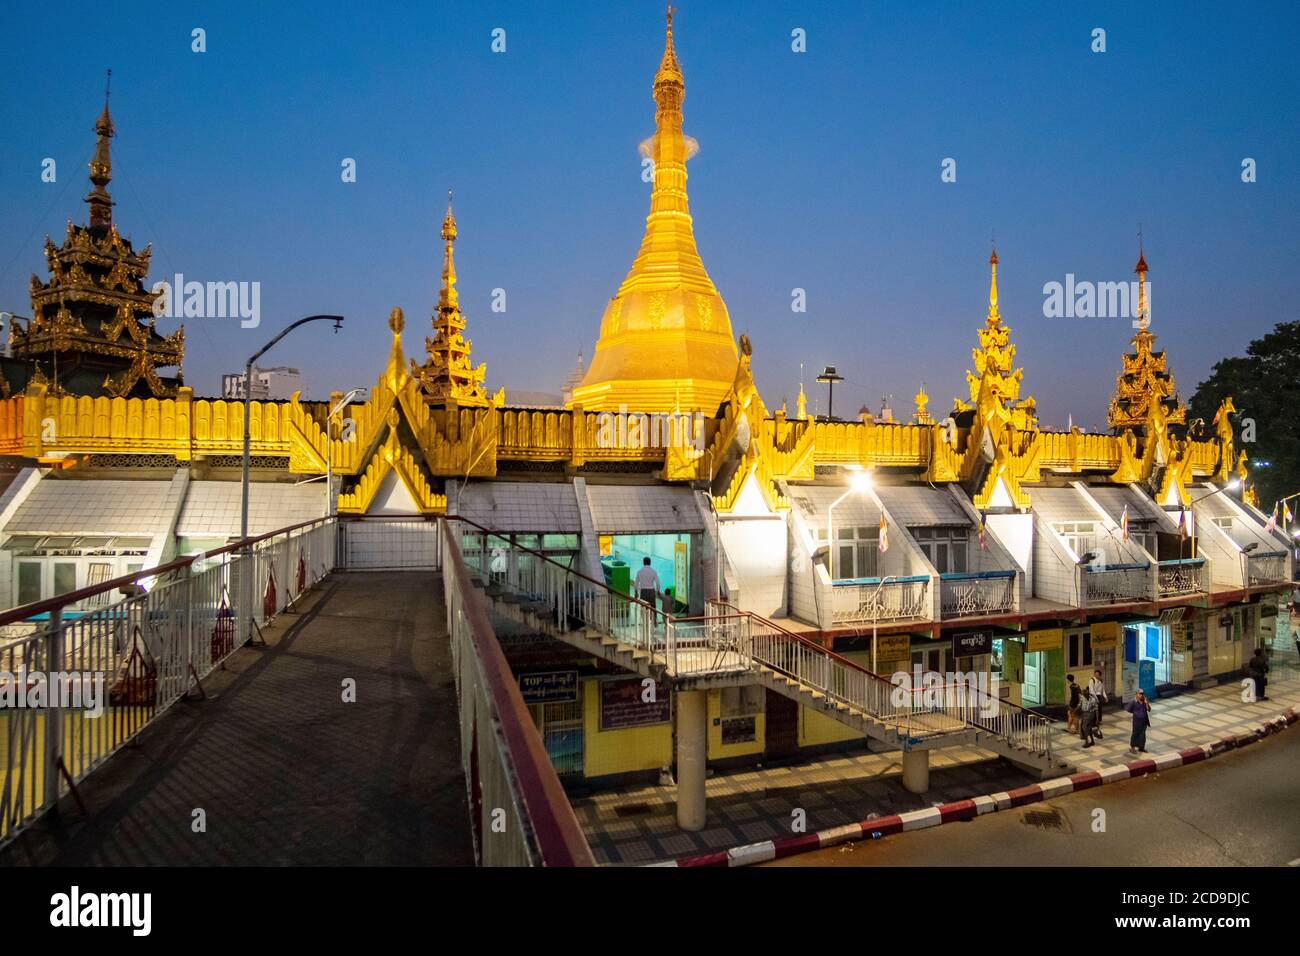 Myanmar (Burma), Yangon, Sule Pagoda Stock Photo